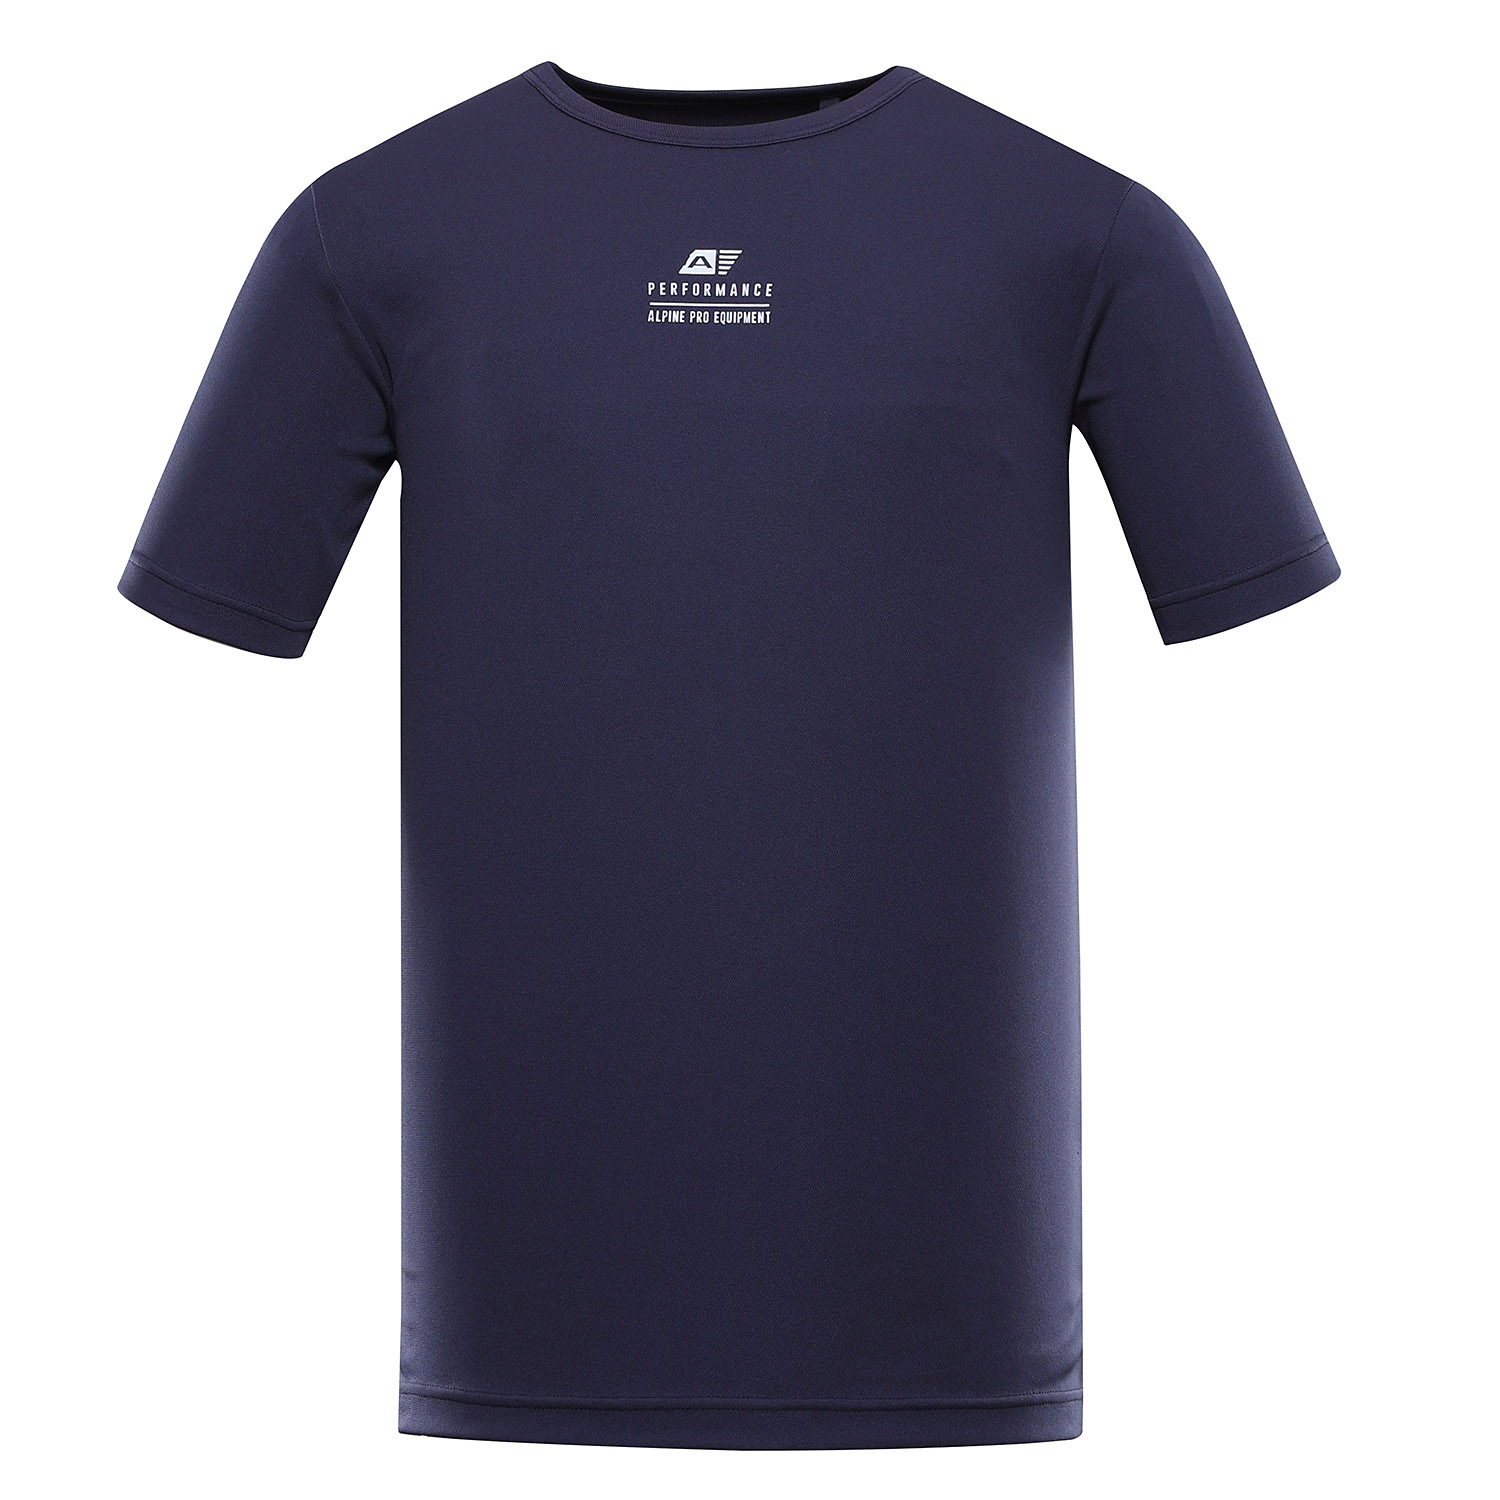 Men's quick-drying T-shirt ALPINE PRO BASIK mood indigo